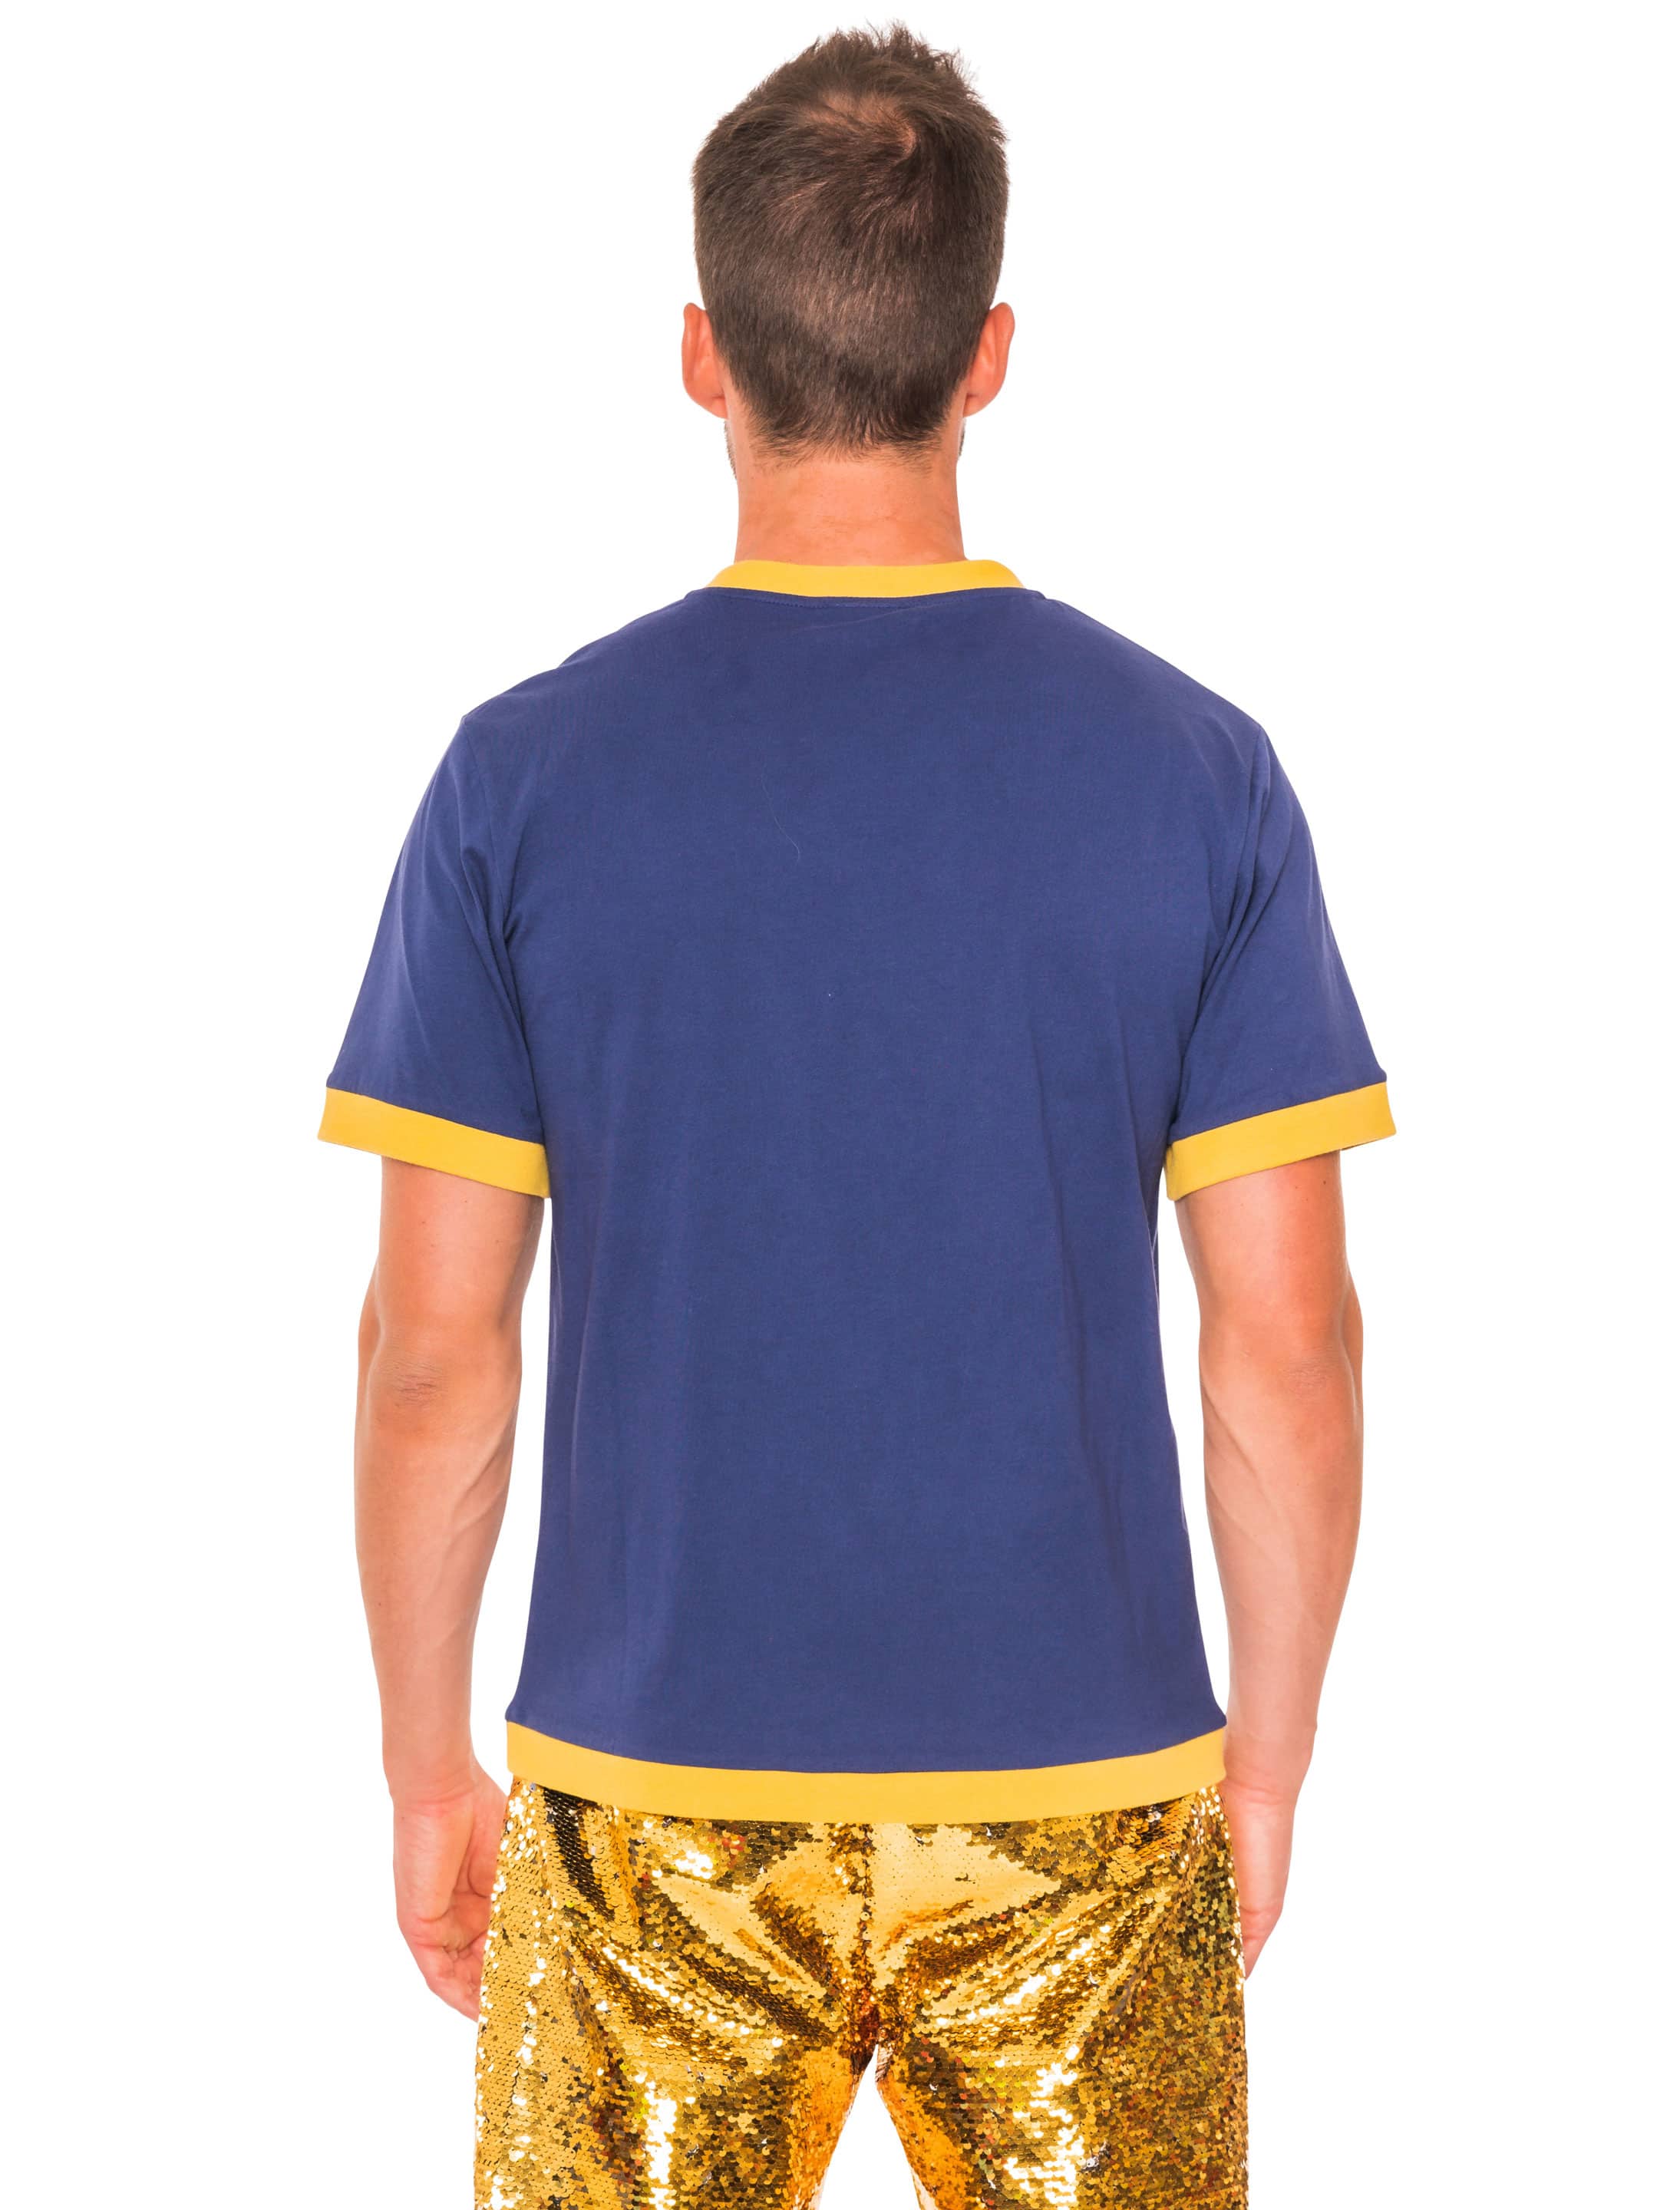 T-Shirt Gaffel Kölsch blau 4XL